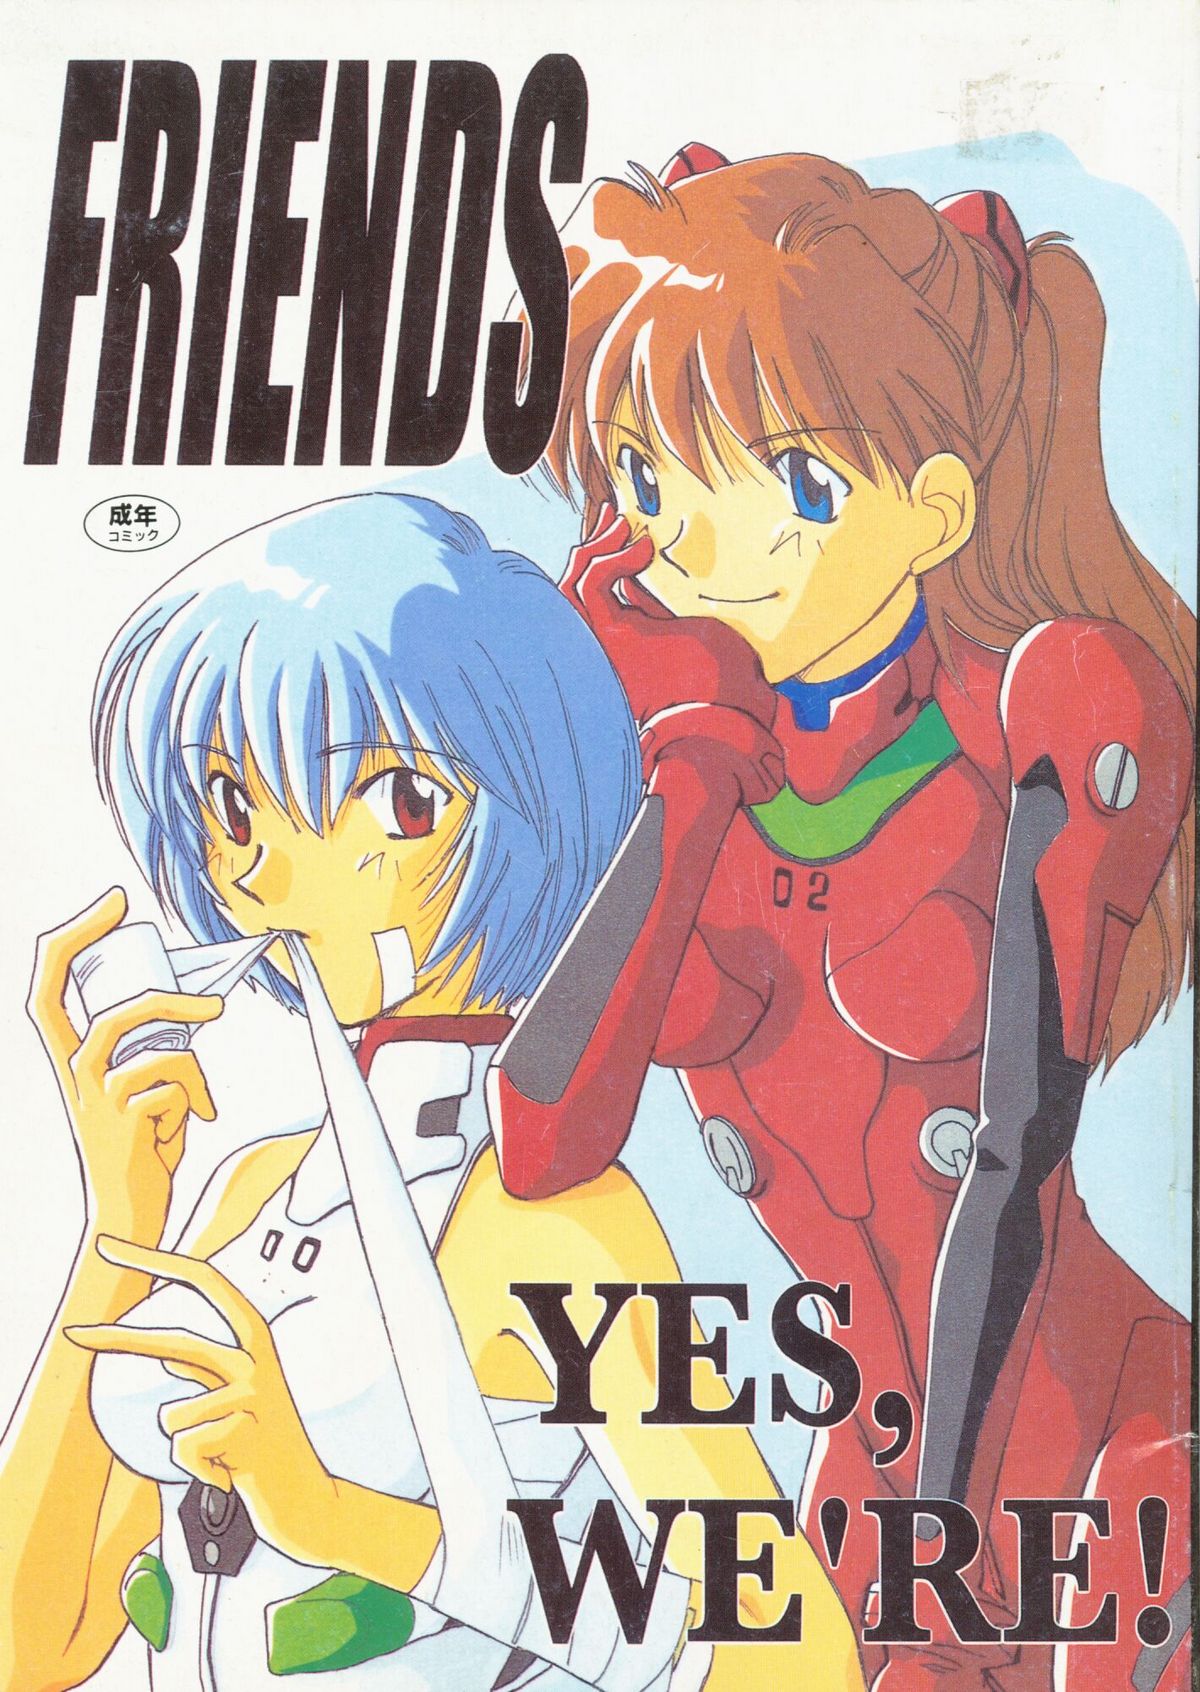 [Takahiro Kutugi] Friends Yes We're (Evangelion) page 1 full